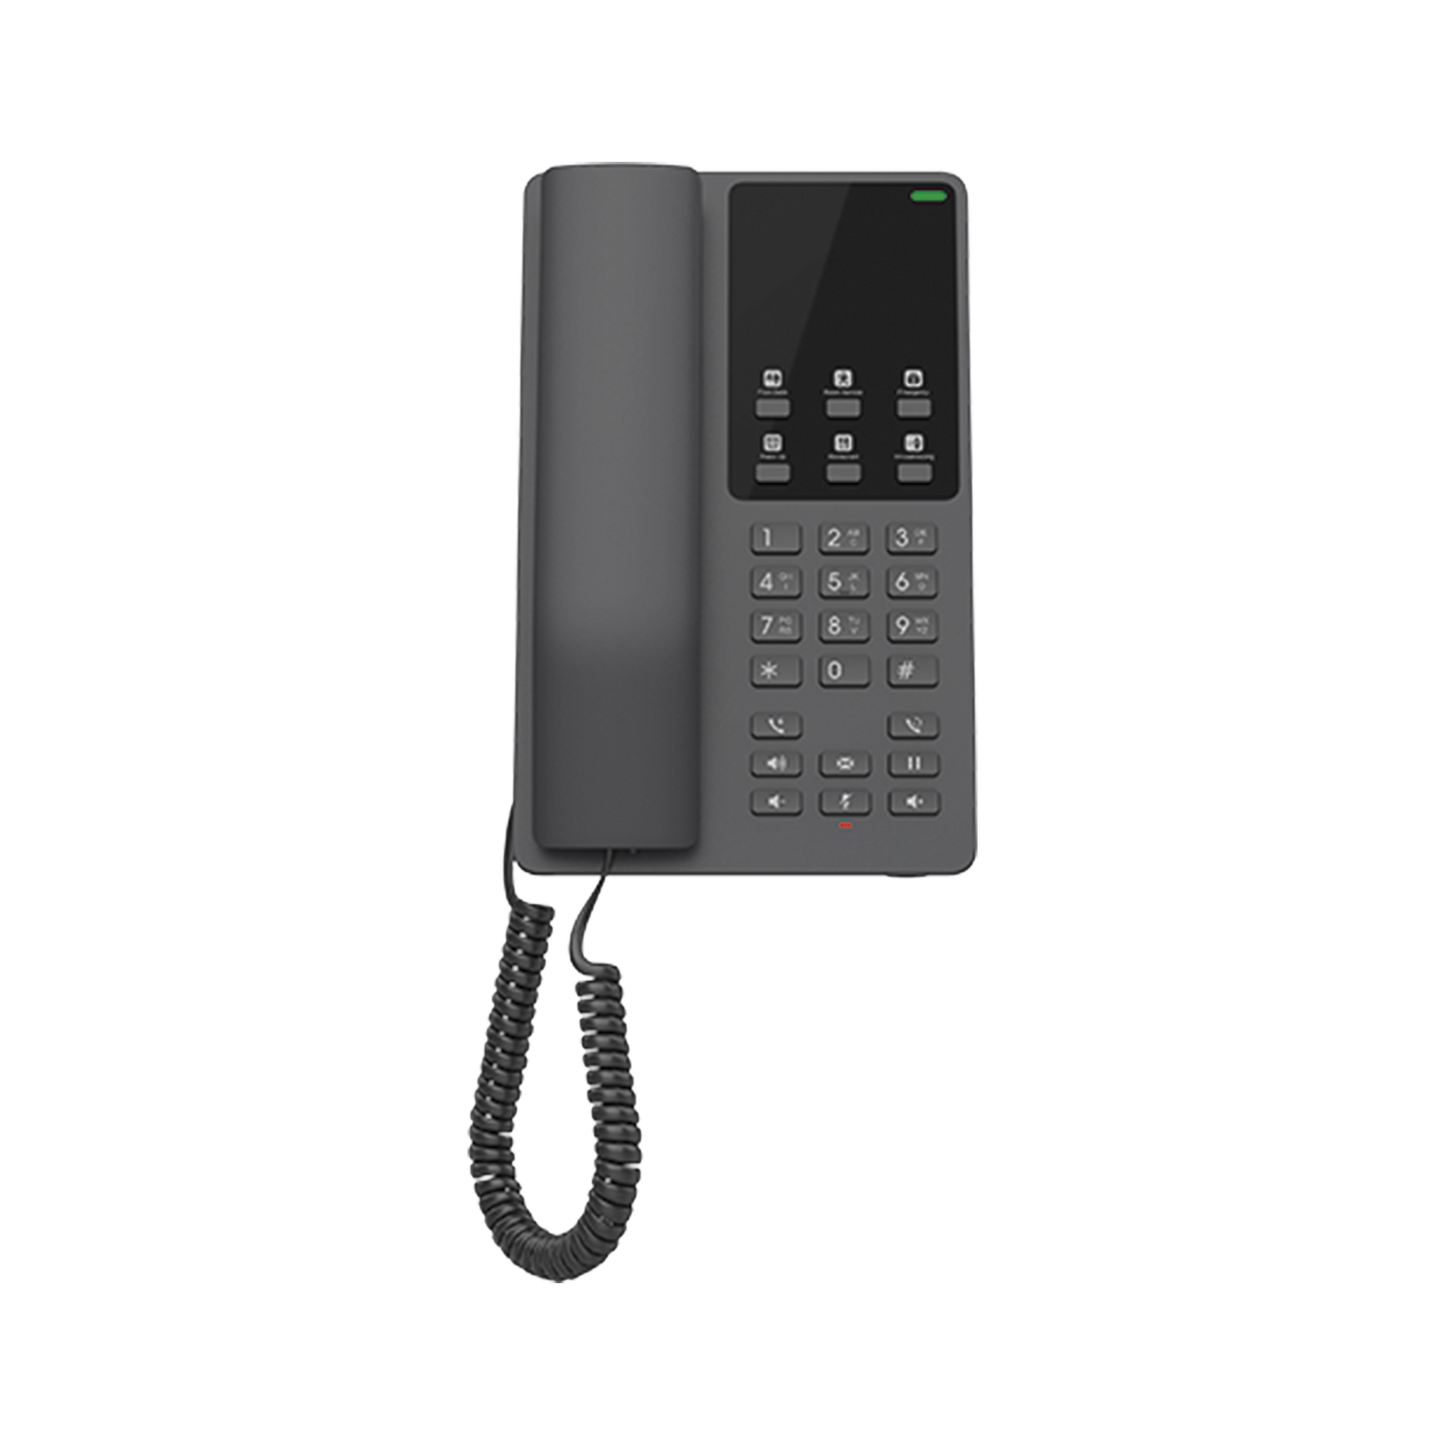 Teléfono IP Hotelero Wi-Fi, 2 líneas SIP con 2 cuentas, codec Opus, IPV4/IPV6, color negro, con gestión en la nube GDMS